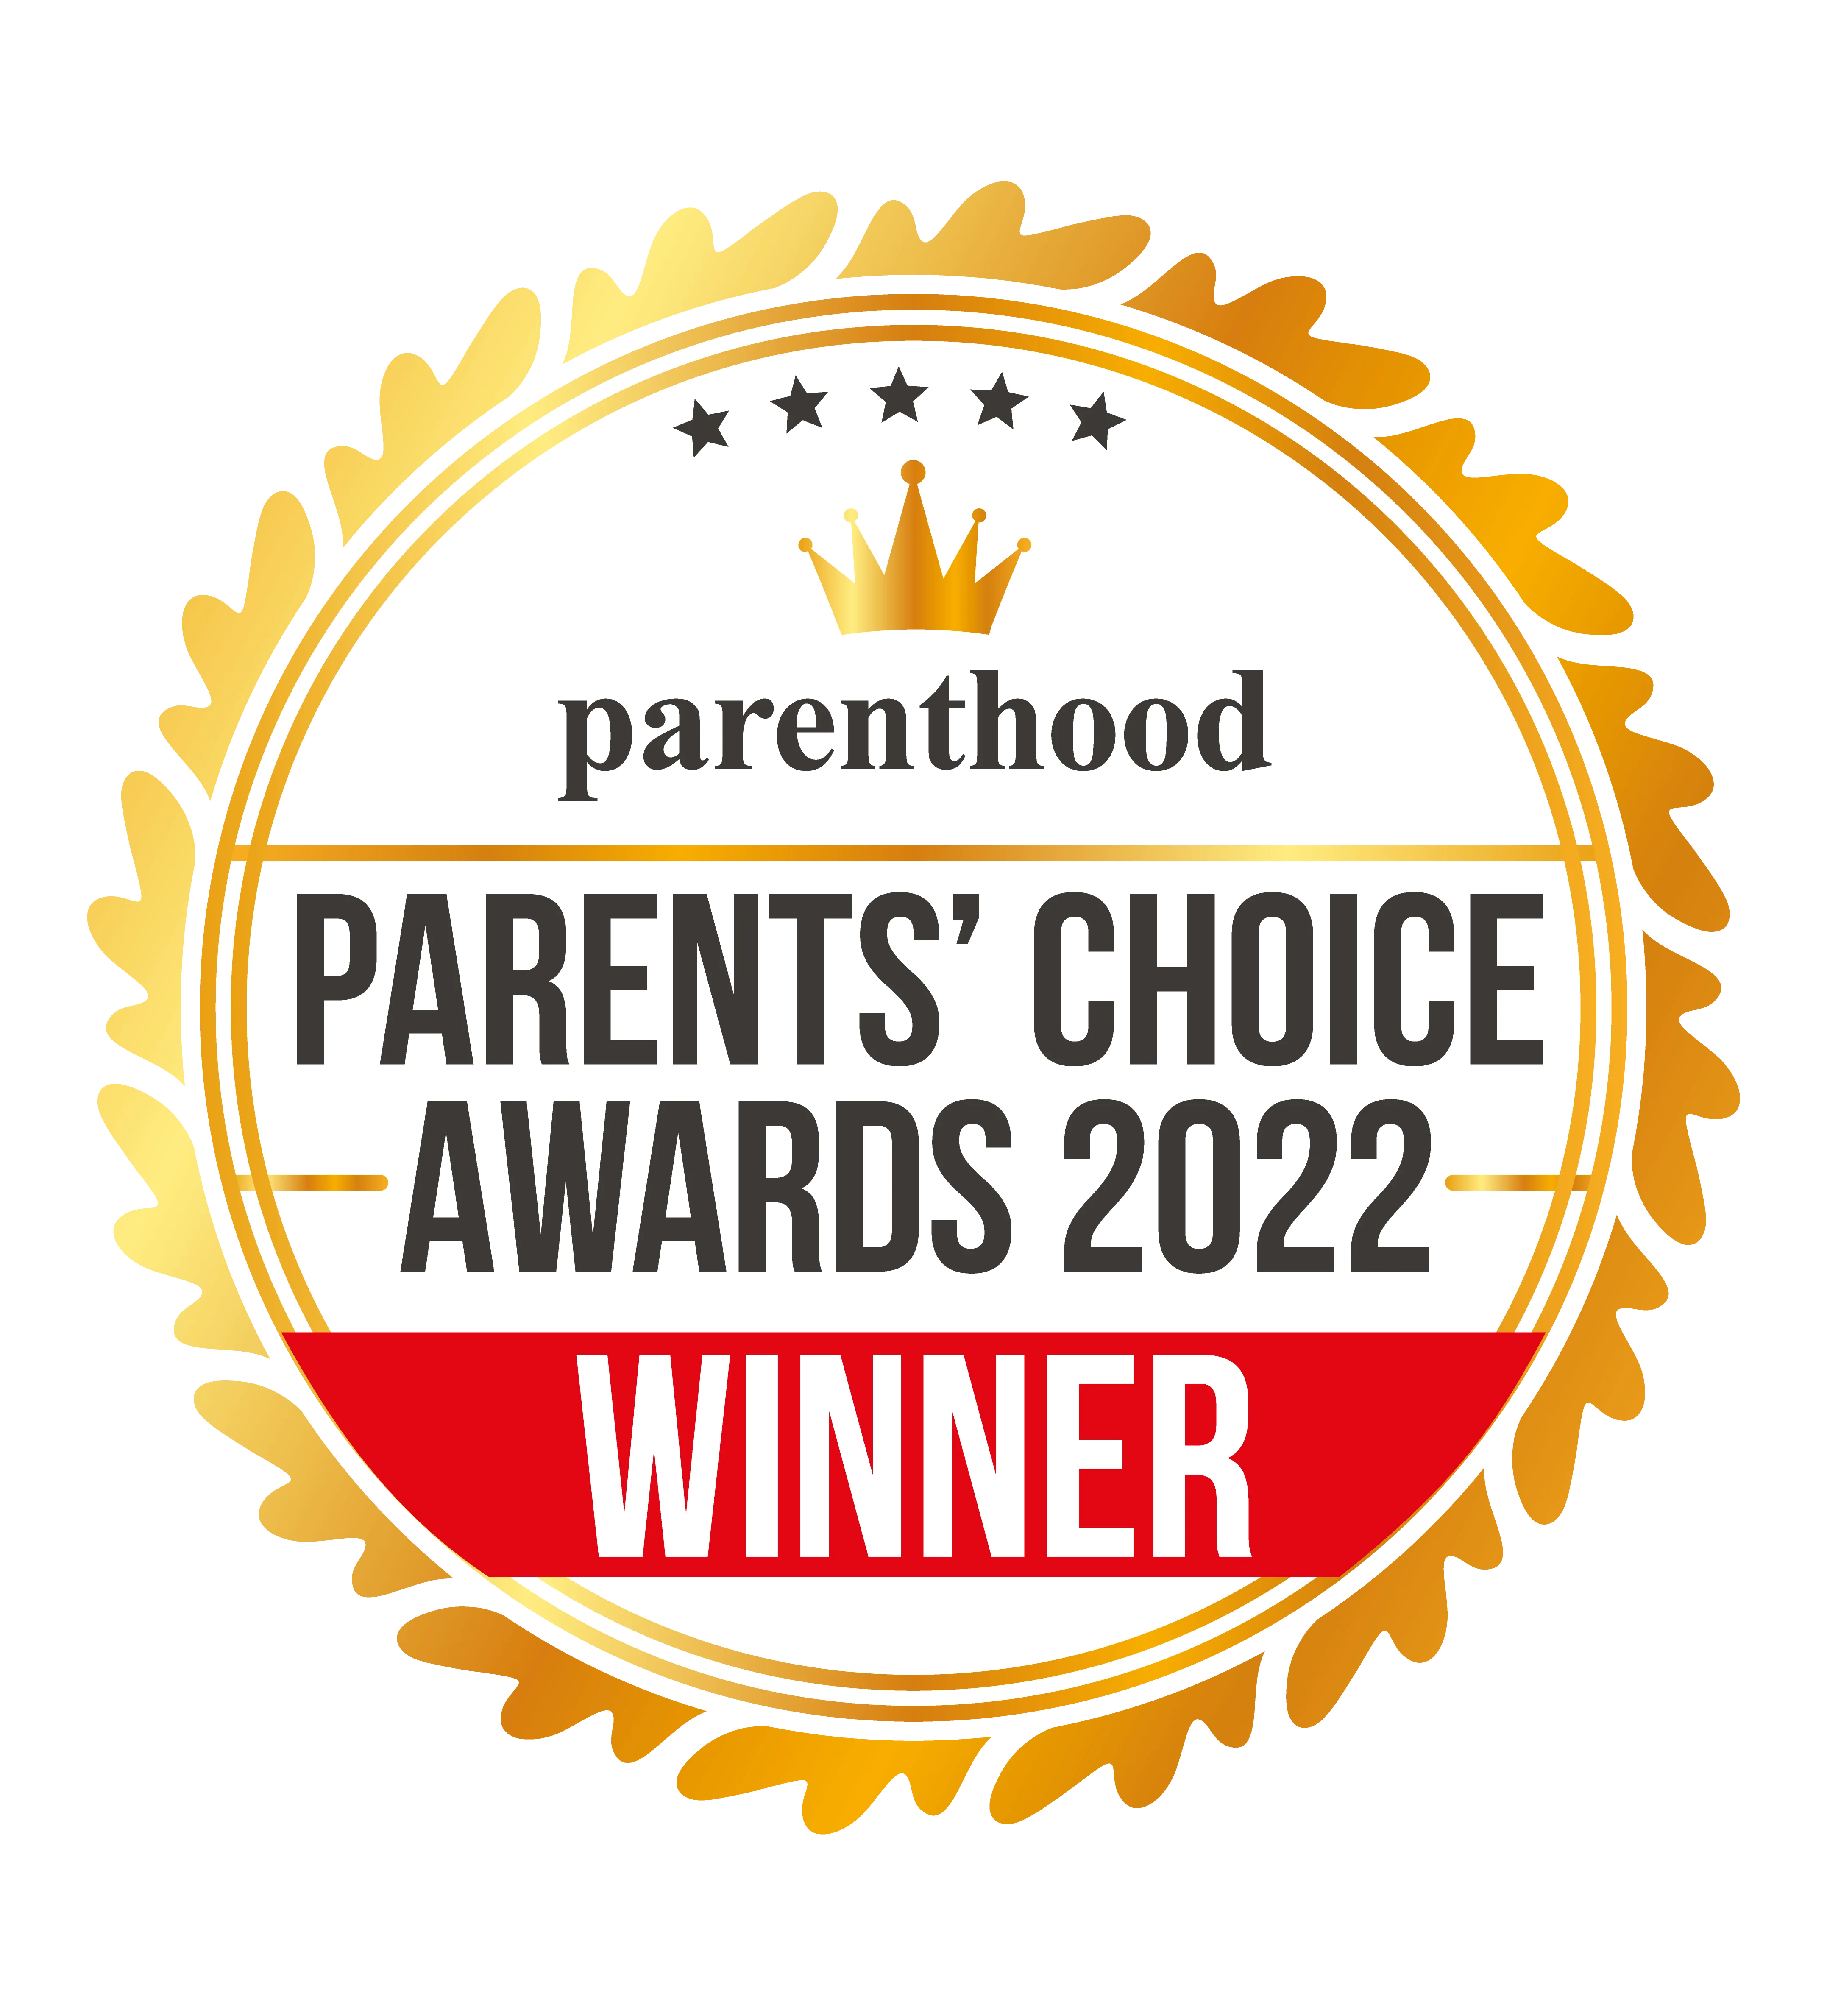 parents' choice awards 2022